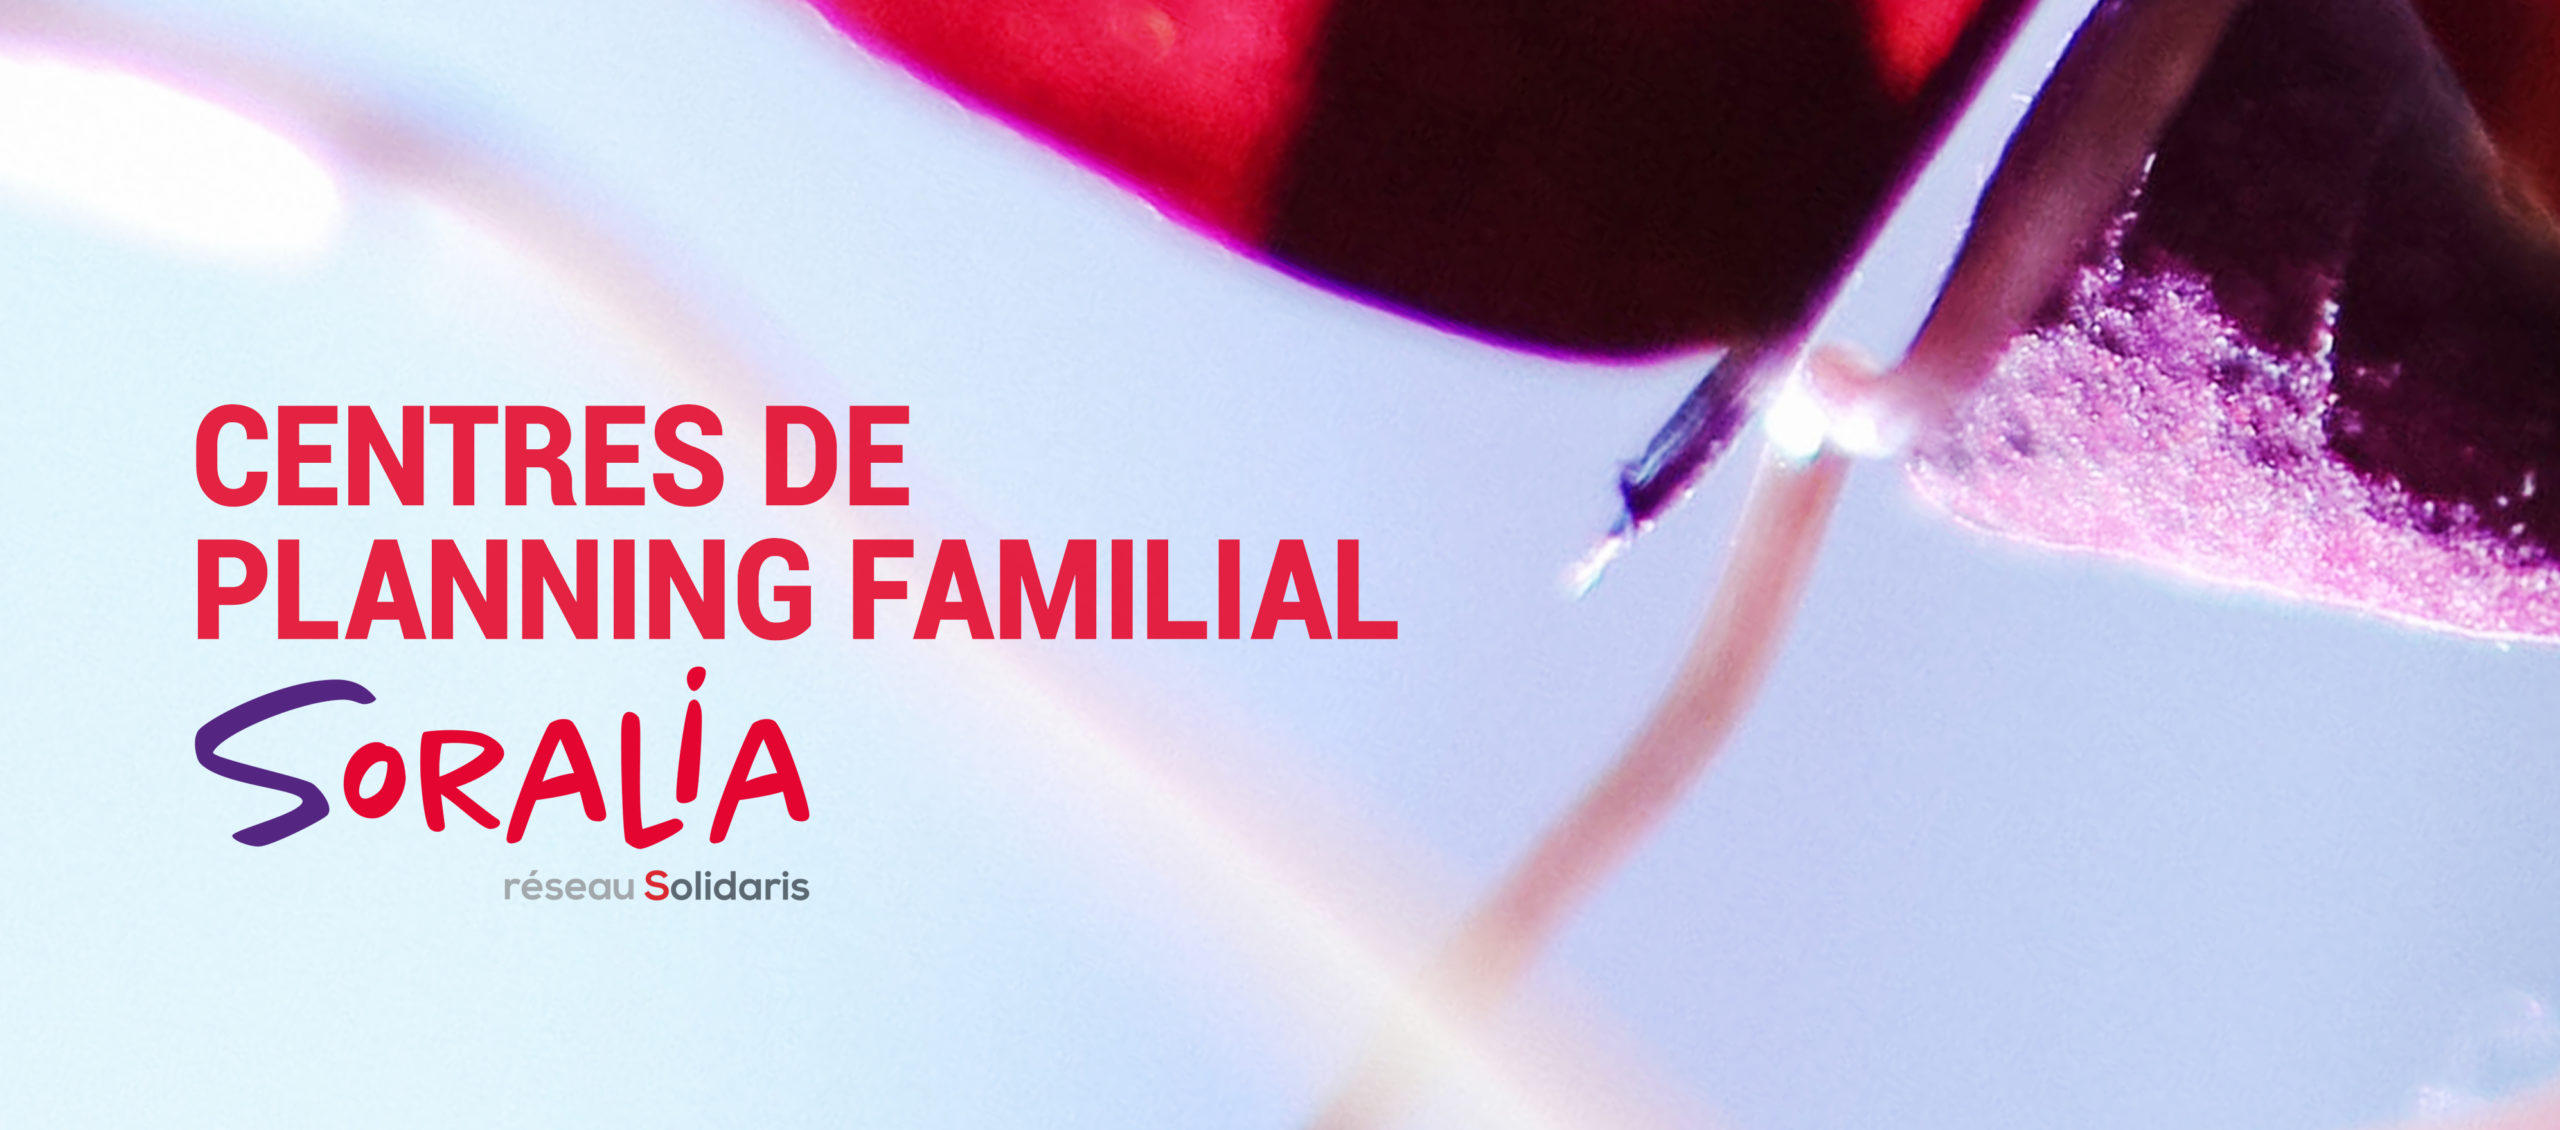 Centre de planning familial Soralia de Liège. Lieu d'accueil pour aborder toutes questions liées à la sexualité, les relations, la vie de couple et la vie familiale.